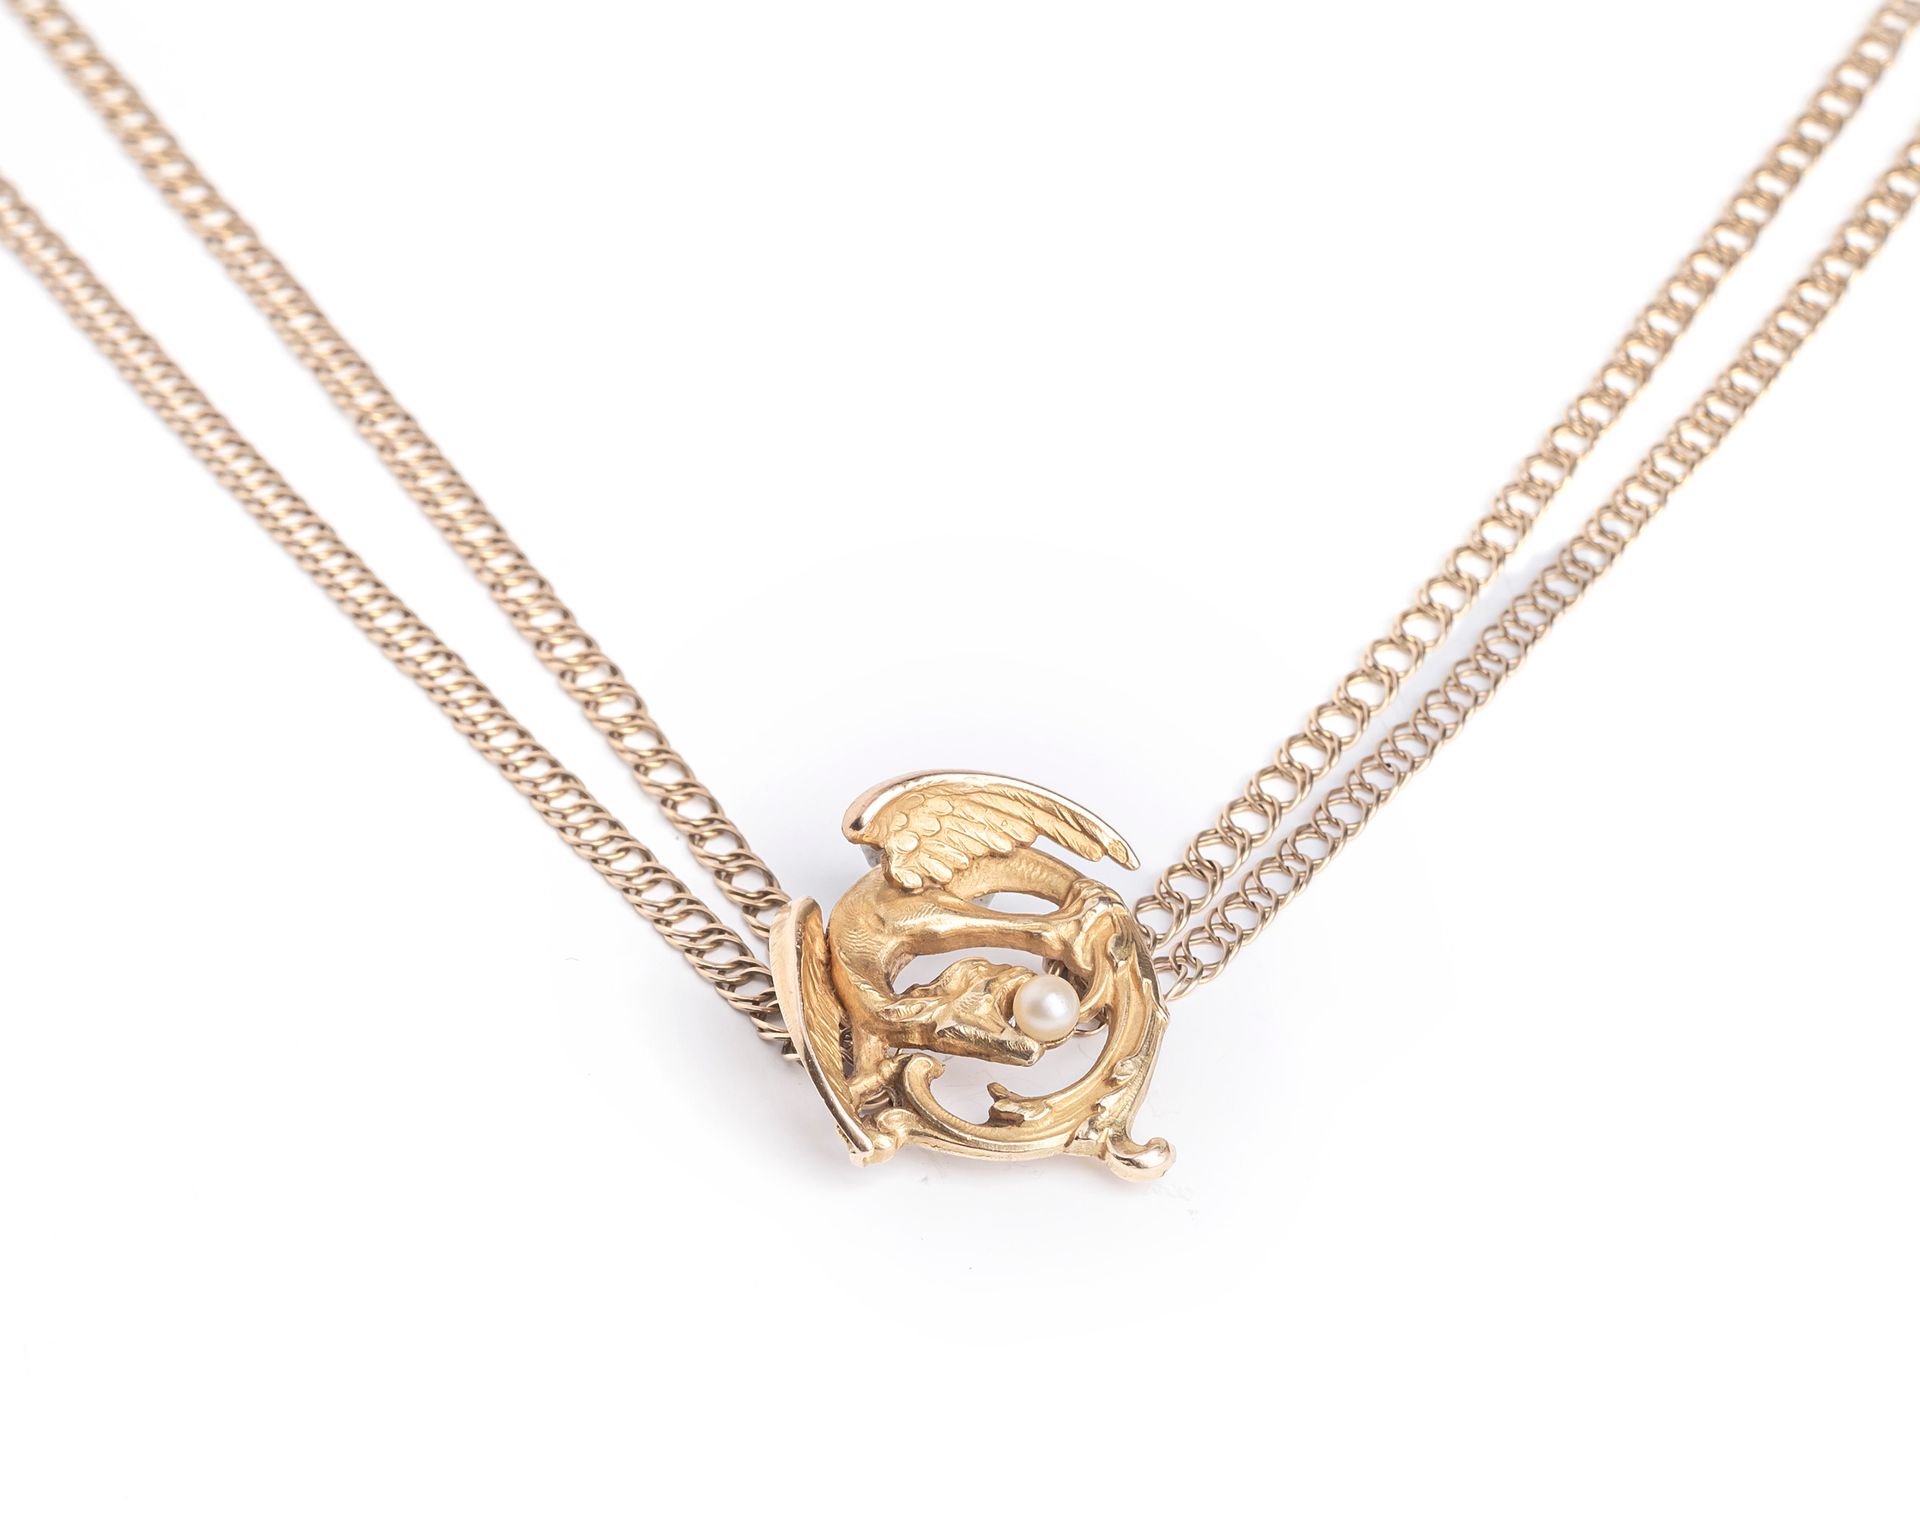 Null 两行18K黄金（千分之七十五）链条，中间夹着一个饰有珍珠的奇美拉。
长度：41厘米
毛重：10,2克。